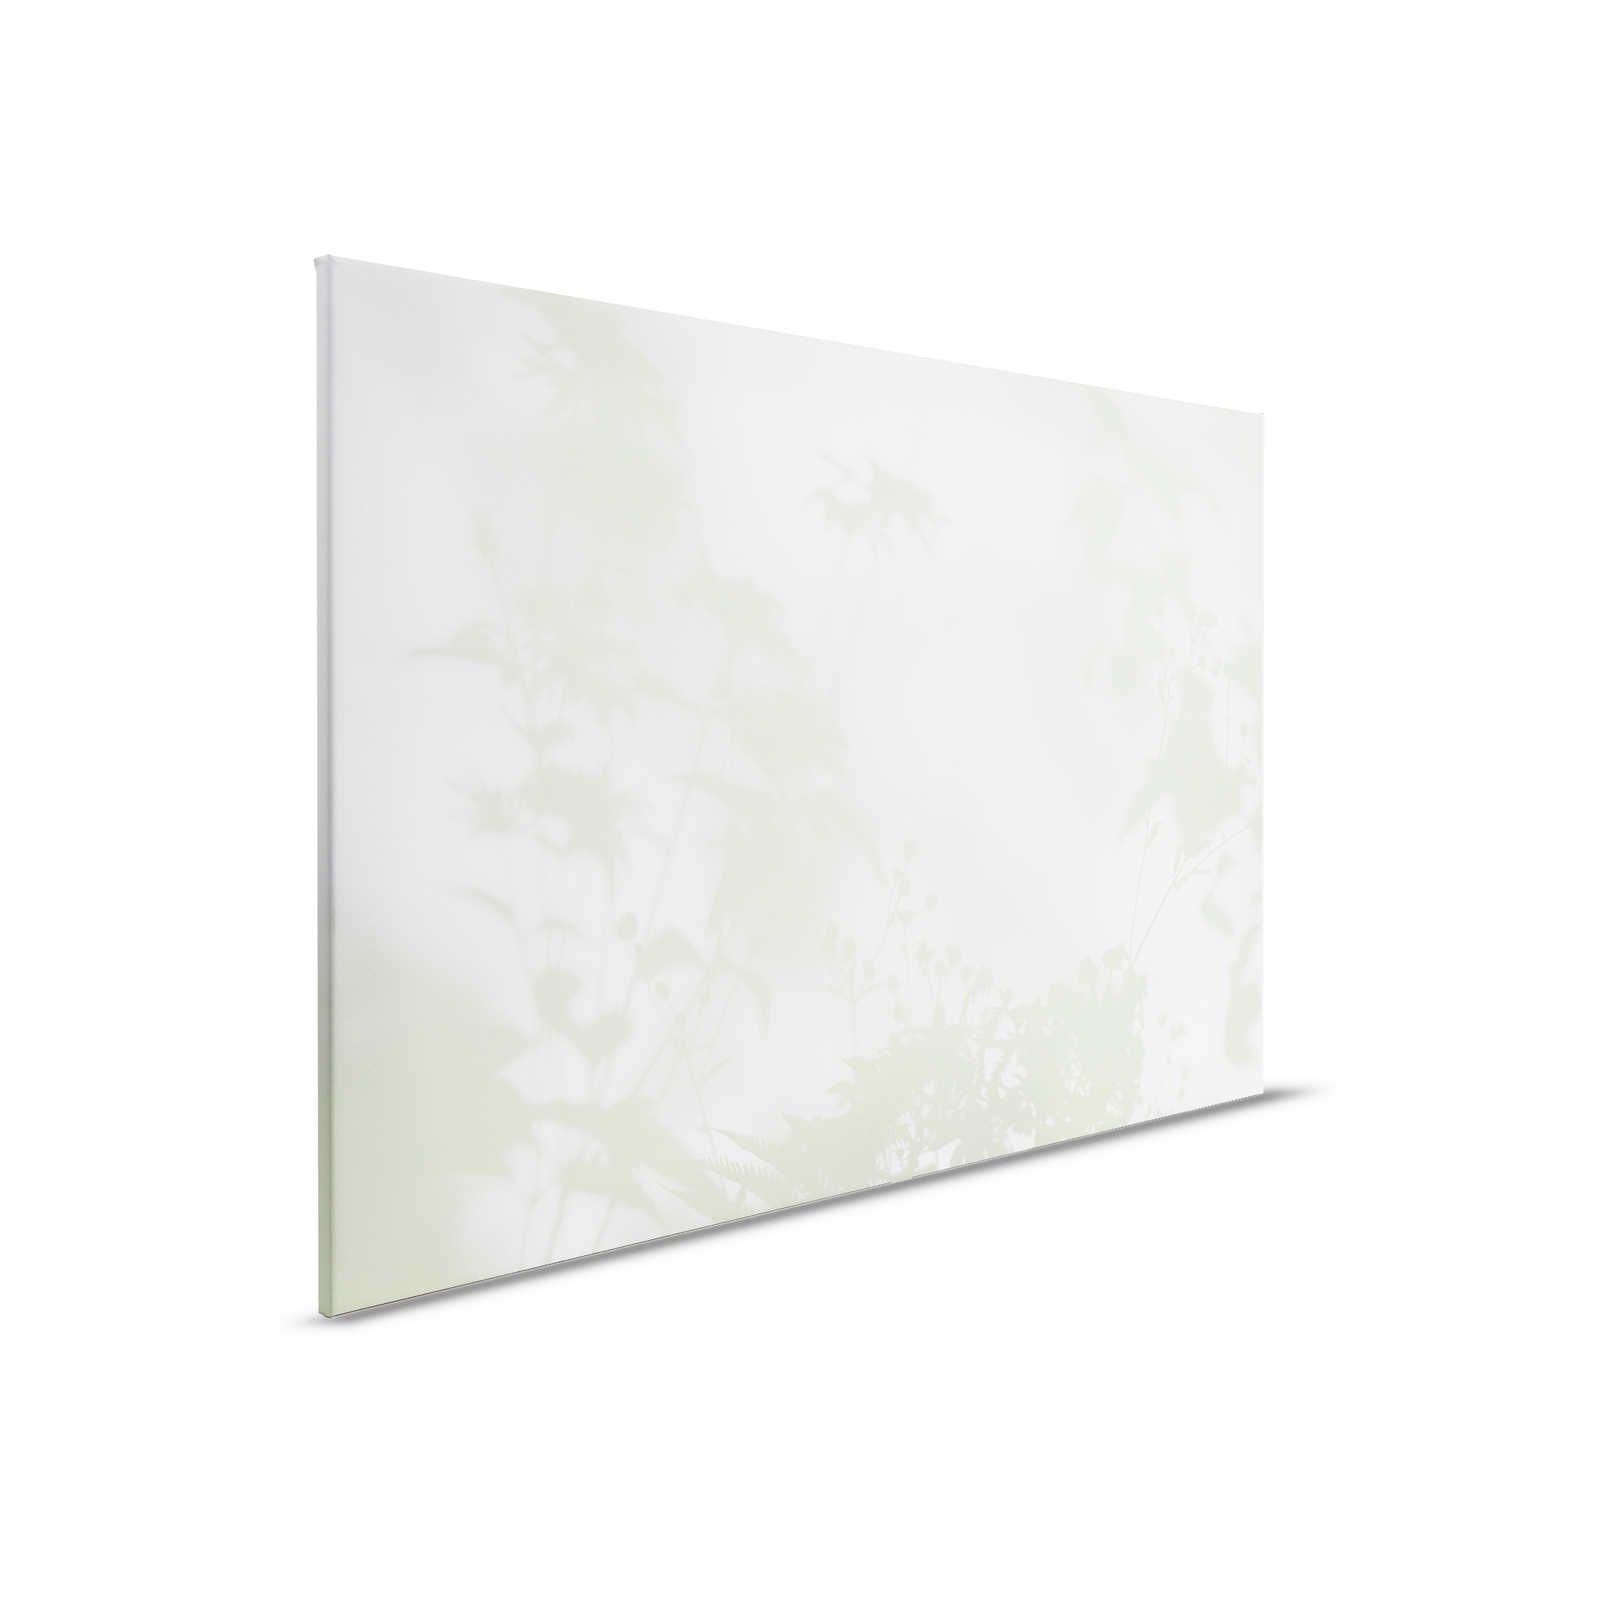 Shadow Room 3 - Lienzo Naturaleza Verde y Blanco, Diseño Desvanecido - 0.90 m x 0.60 m
